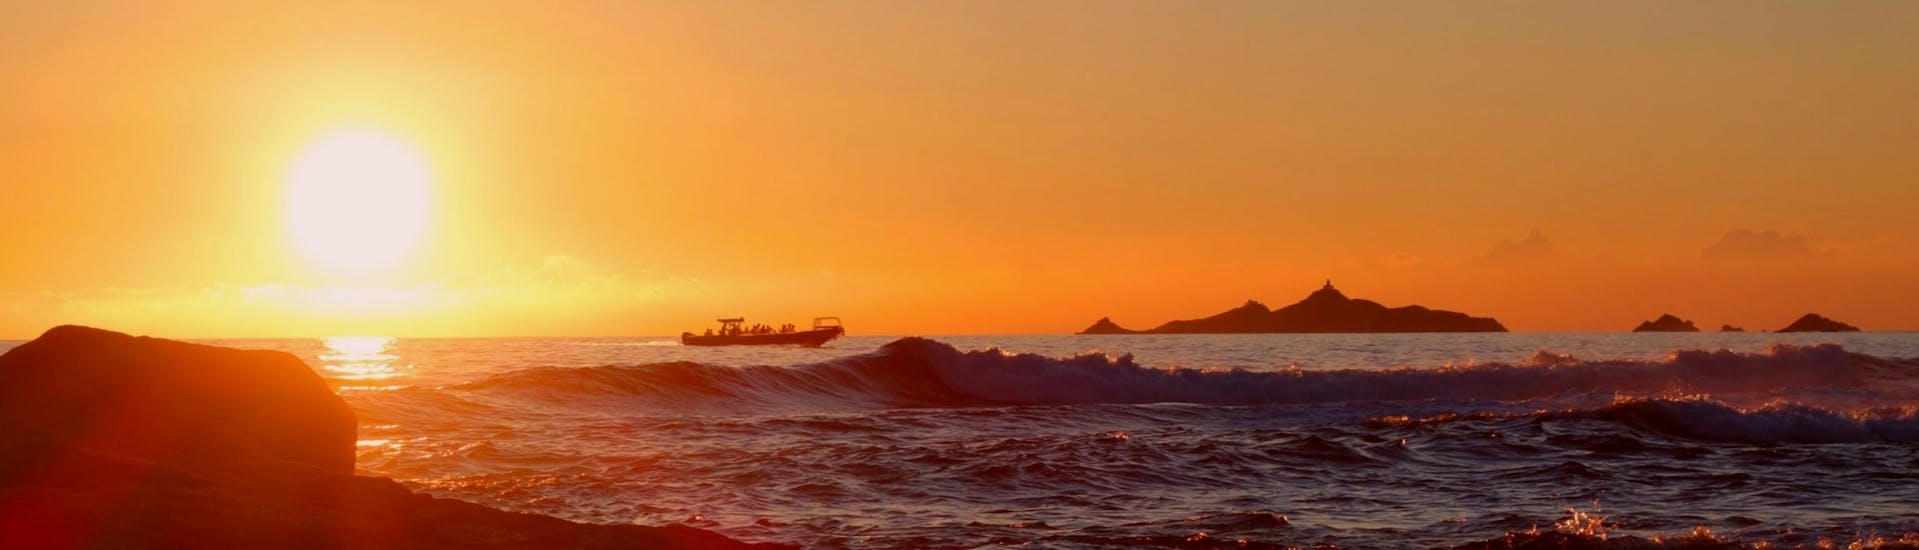 Le persone stanno facendo una gita in barca al tramonto alle Isole Sanguinarie con JPS Aventure Corse.